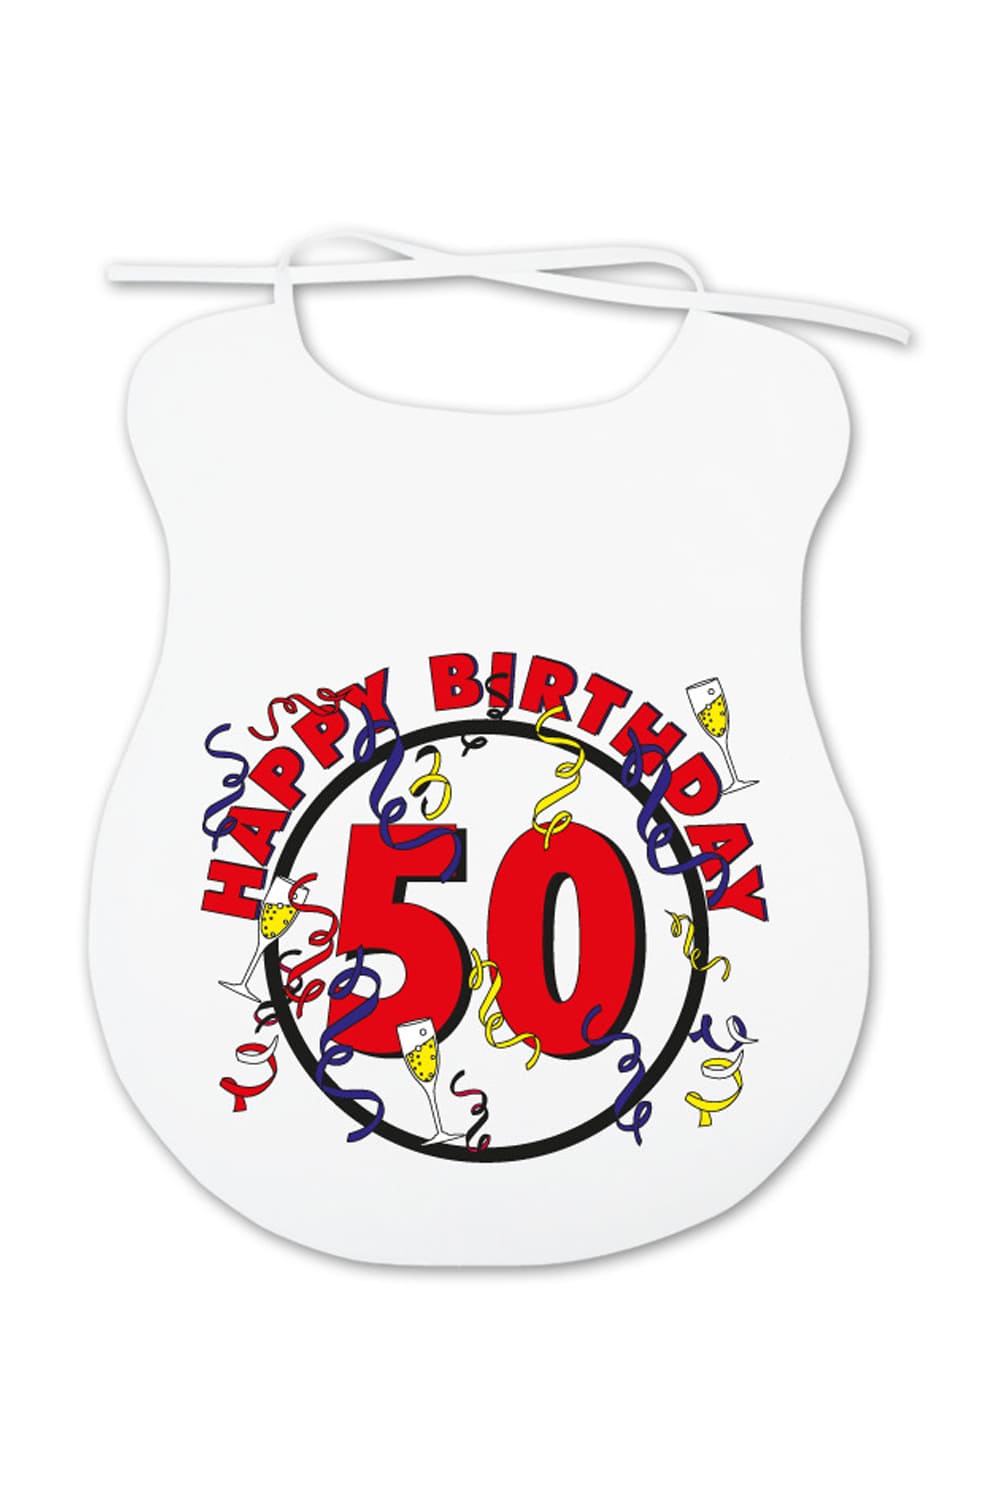 Dieser Erwachsenenlatz ist ein lustiges Geschenk fuer alle Erwachsene, die mehr oder weniger beim Essen kleckern und Humor lieben. Auf dem Spaghettilatz ist ein cooles Bild aufgedruckt sowie die Zahl 50 und die Aufschrift: Happy Birthday. Dieses witzige Geschenk oder Mitbringsel zum 50. Geburtstag!!! 